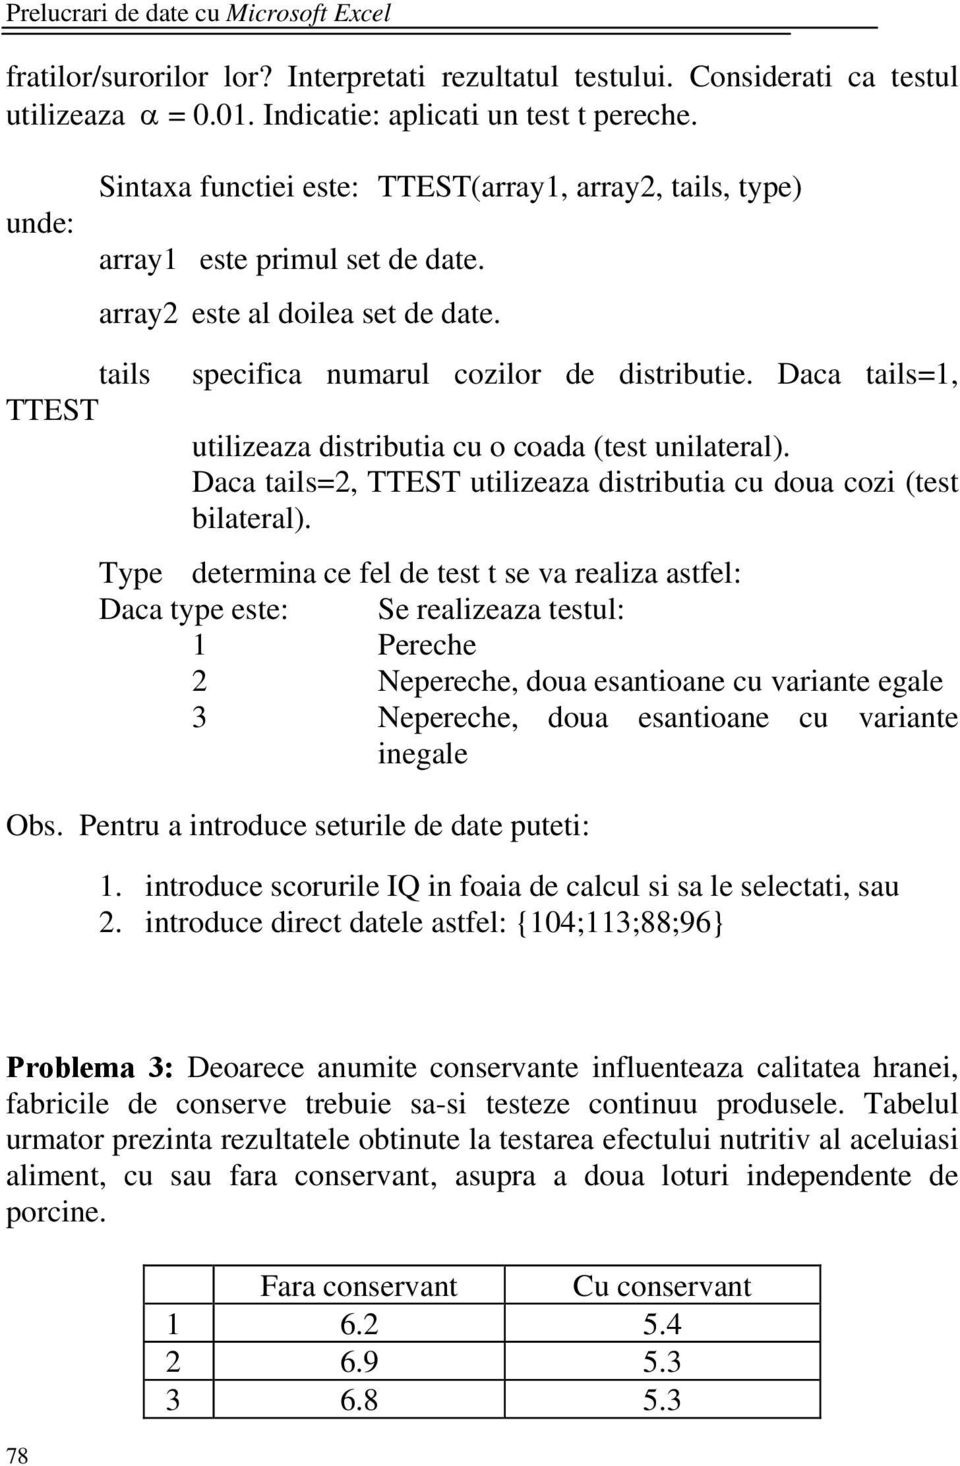 Daca tails=1, utilizeaza distributia cu o coada (test unilateral). Daca tails=2, TTEST utilizeaza distributia cu doua cozi (test bilateral).